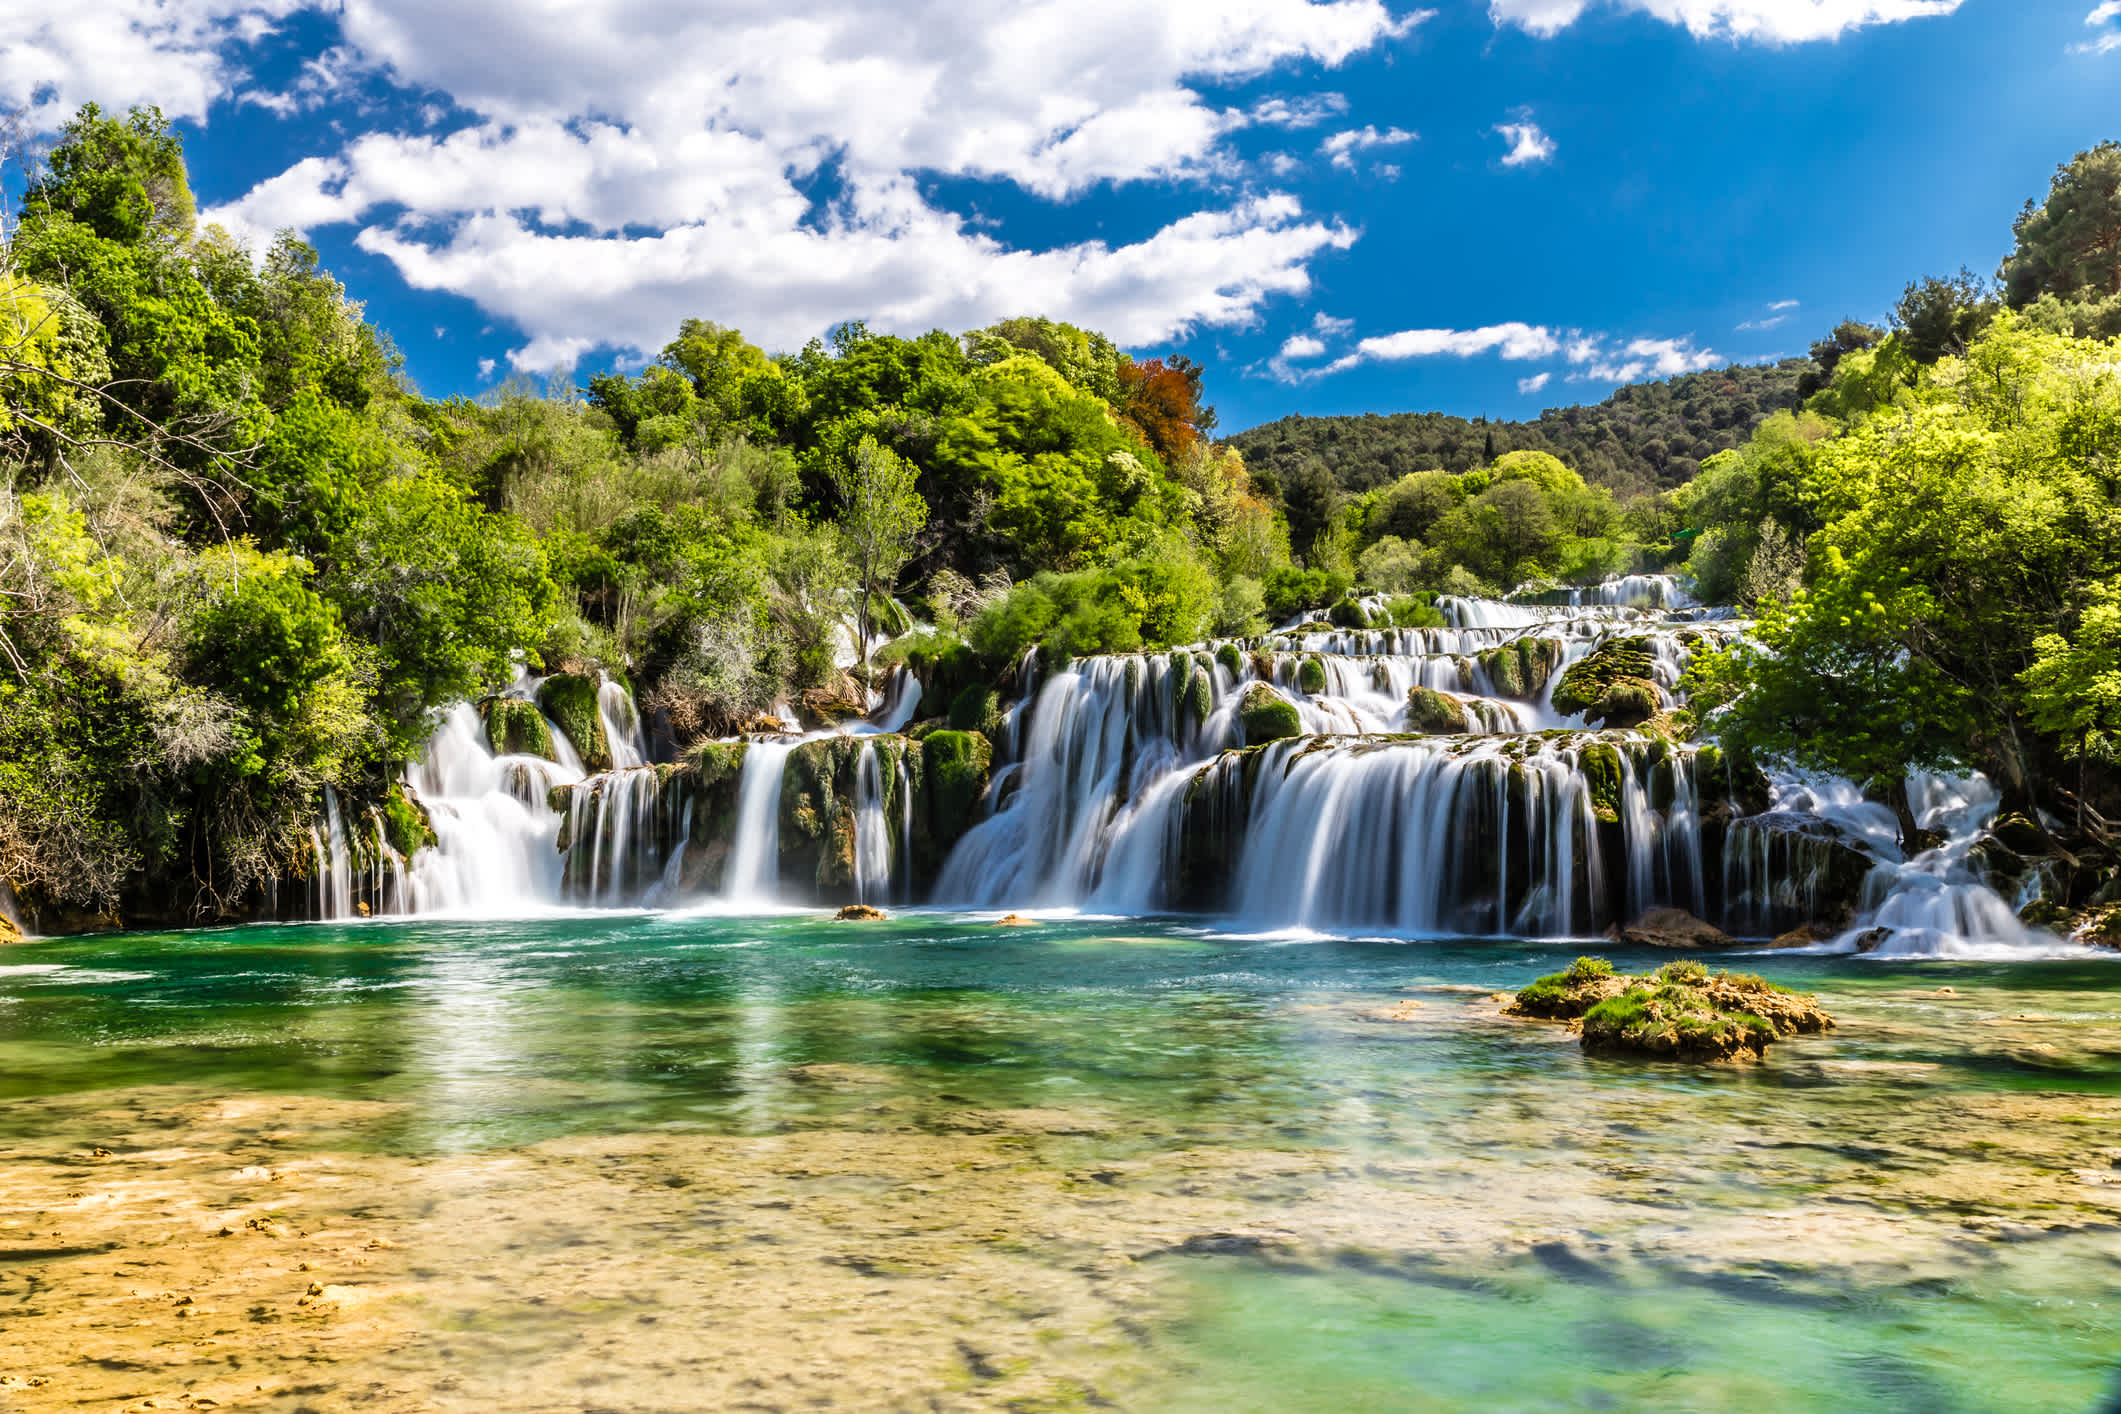 Chute d'eau dans le parc national de Krka, Dalmatie, Croatie.